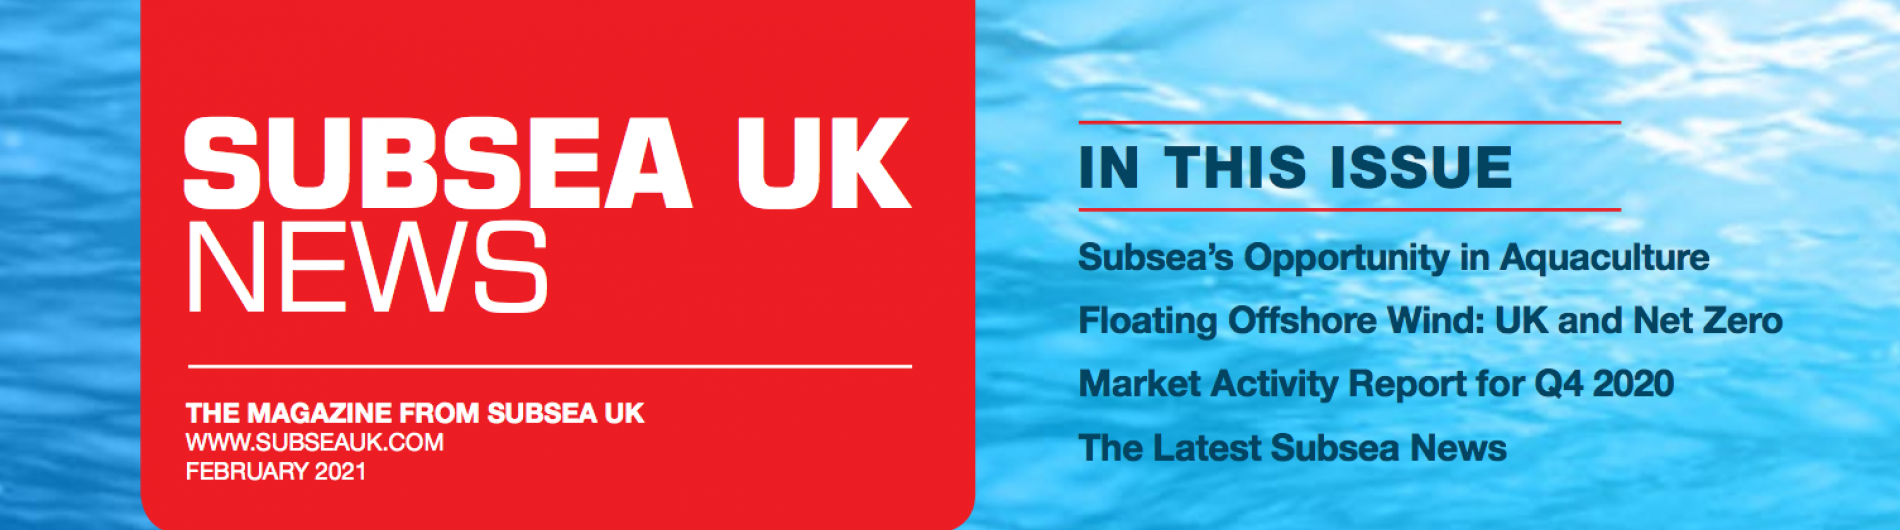 Subsea UK News